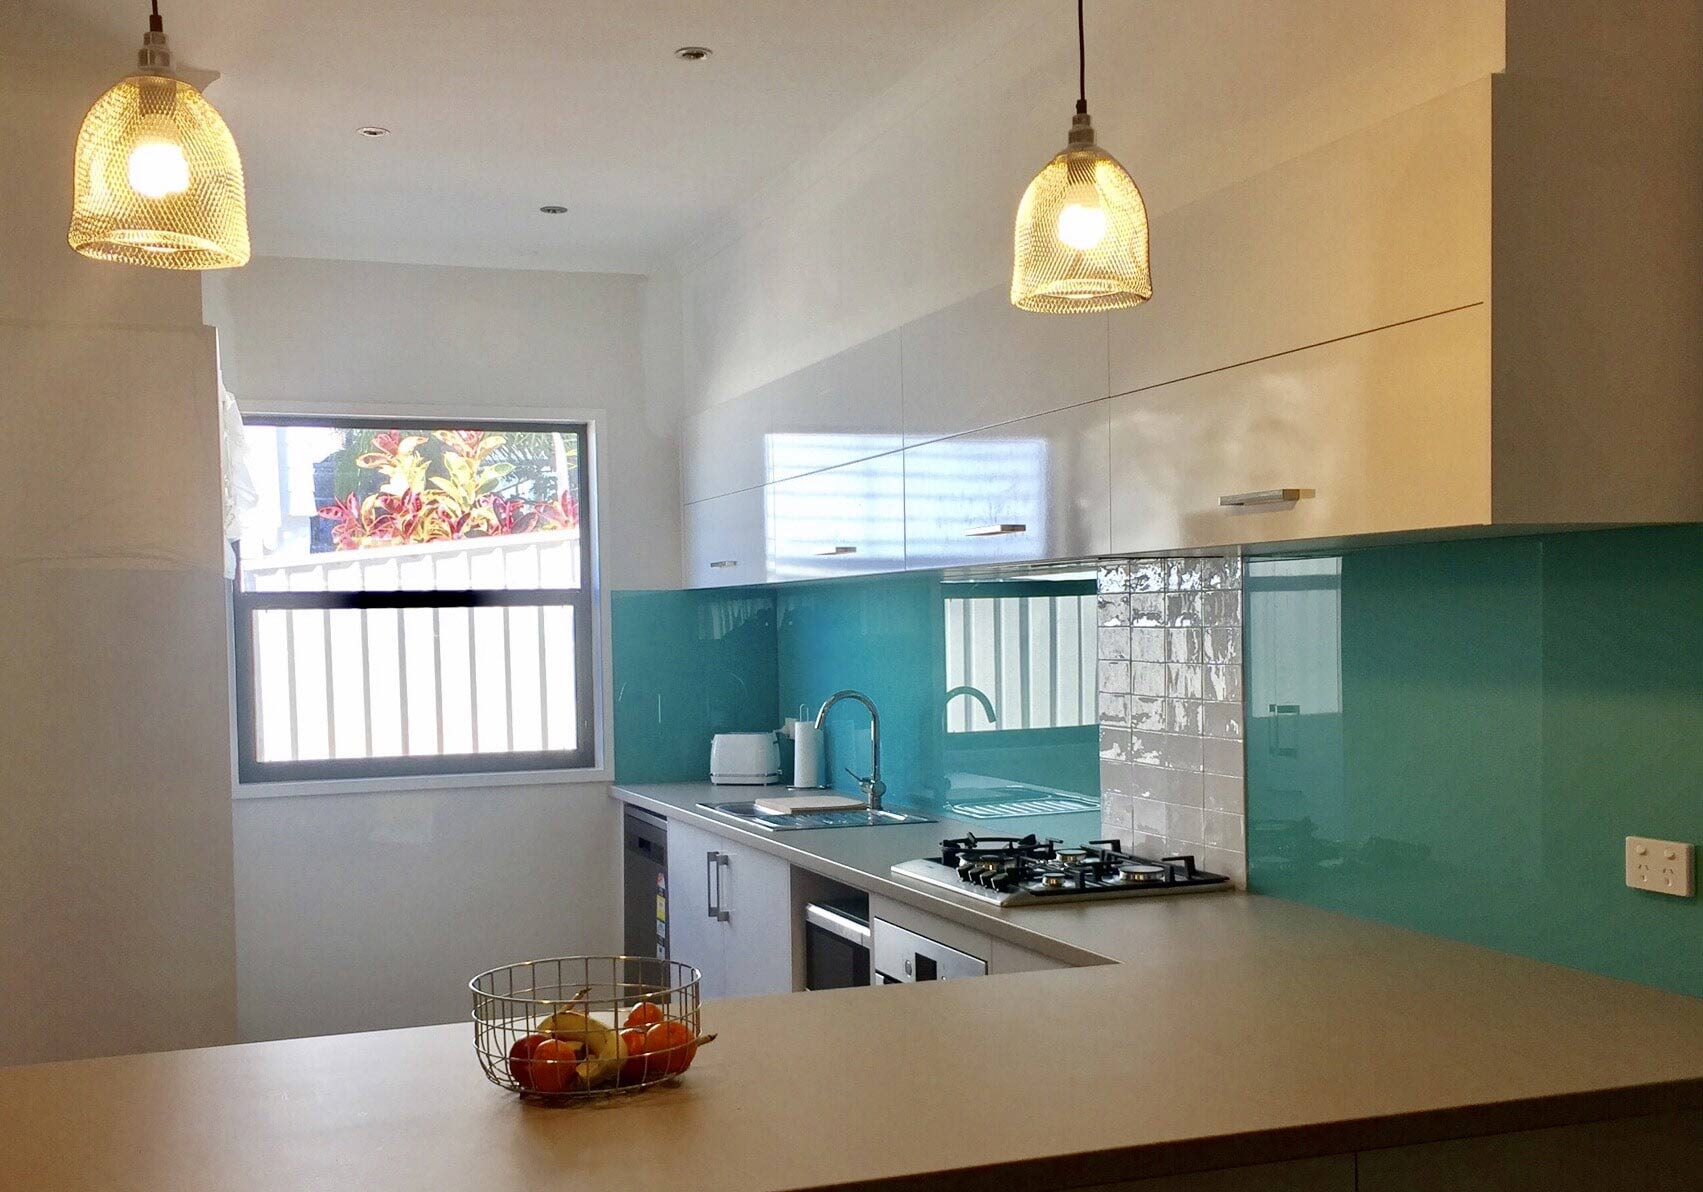 aquamarine coloured kitchen splashback in a modern kitchen in Cessnock, NSW